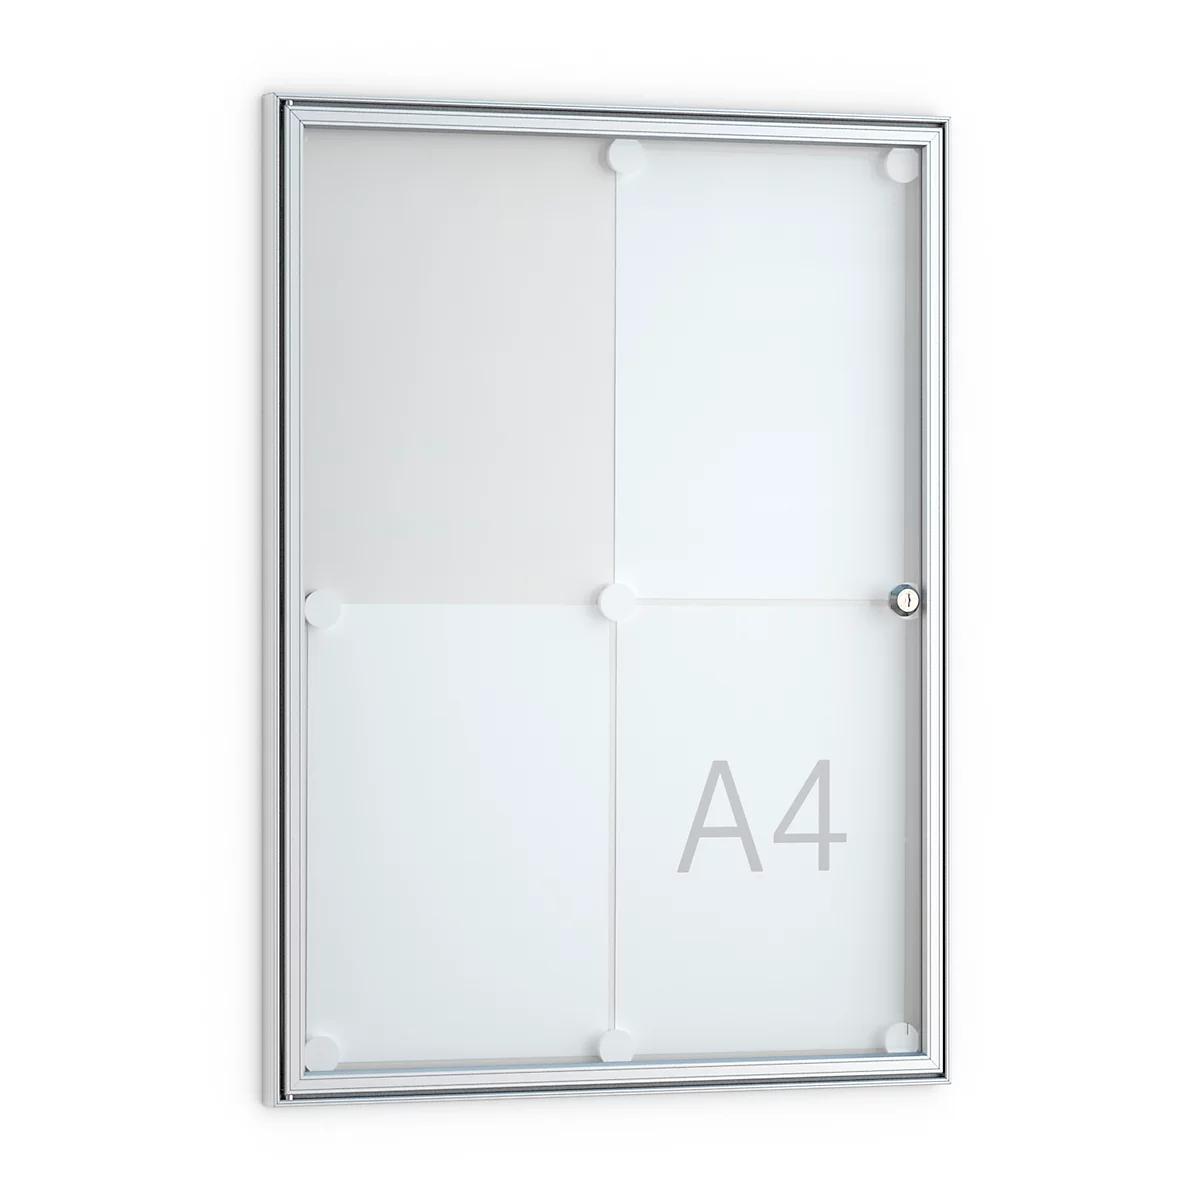 Tablón de anuncios plano, en punta, 4 x DIN A4, puerta de cristal con marco